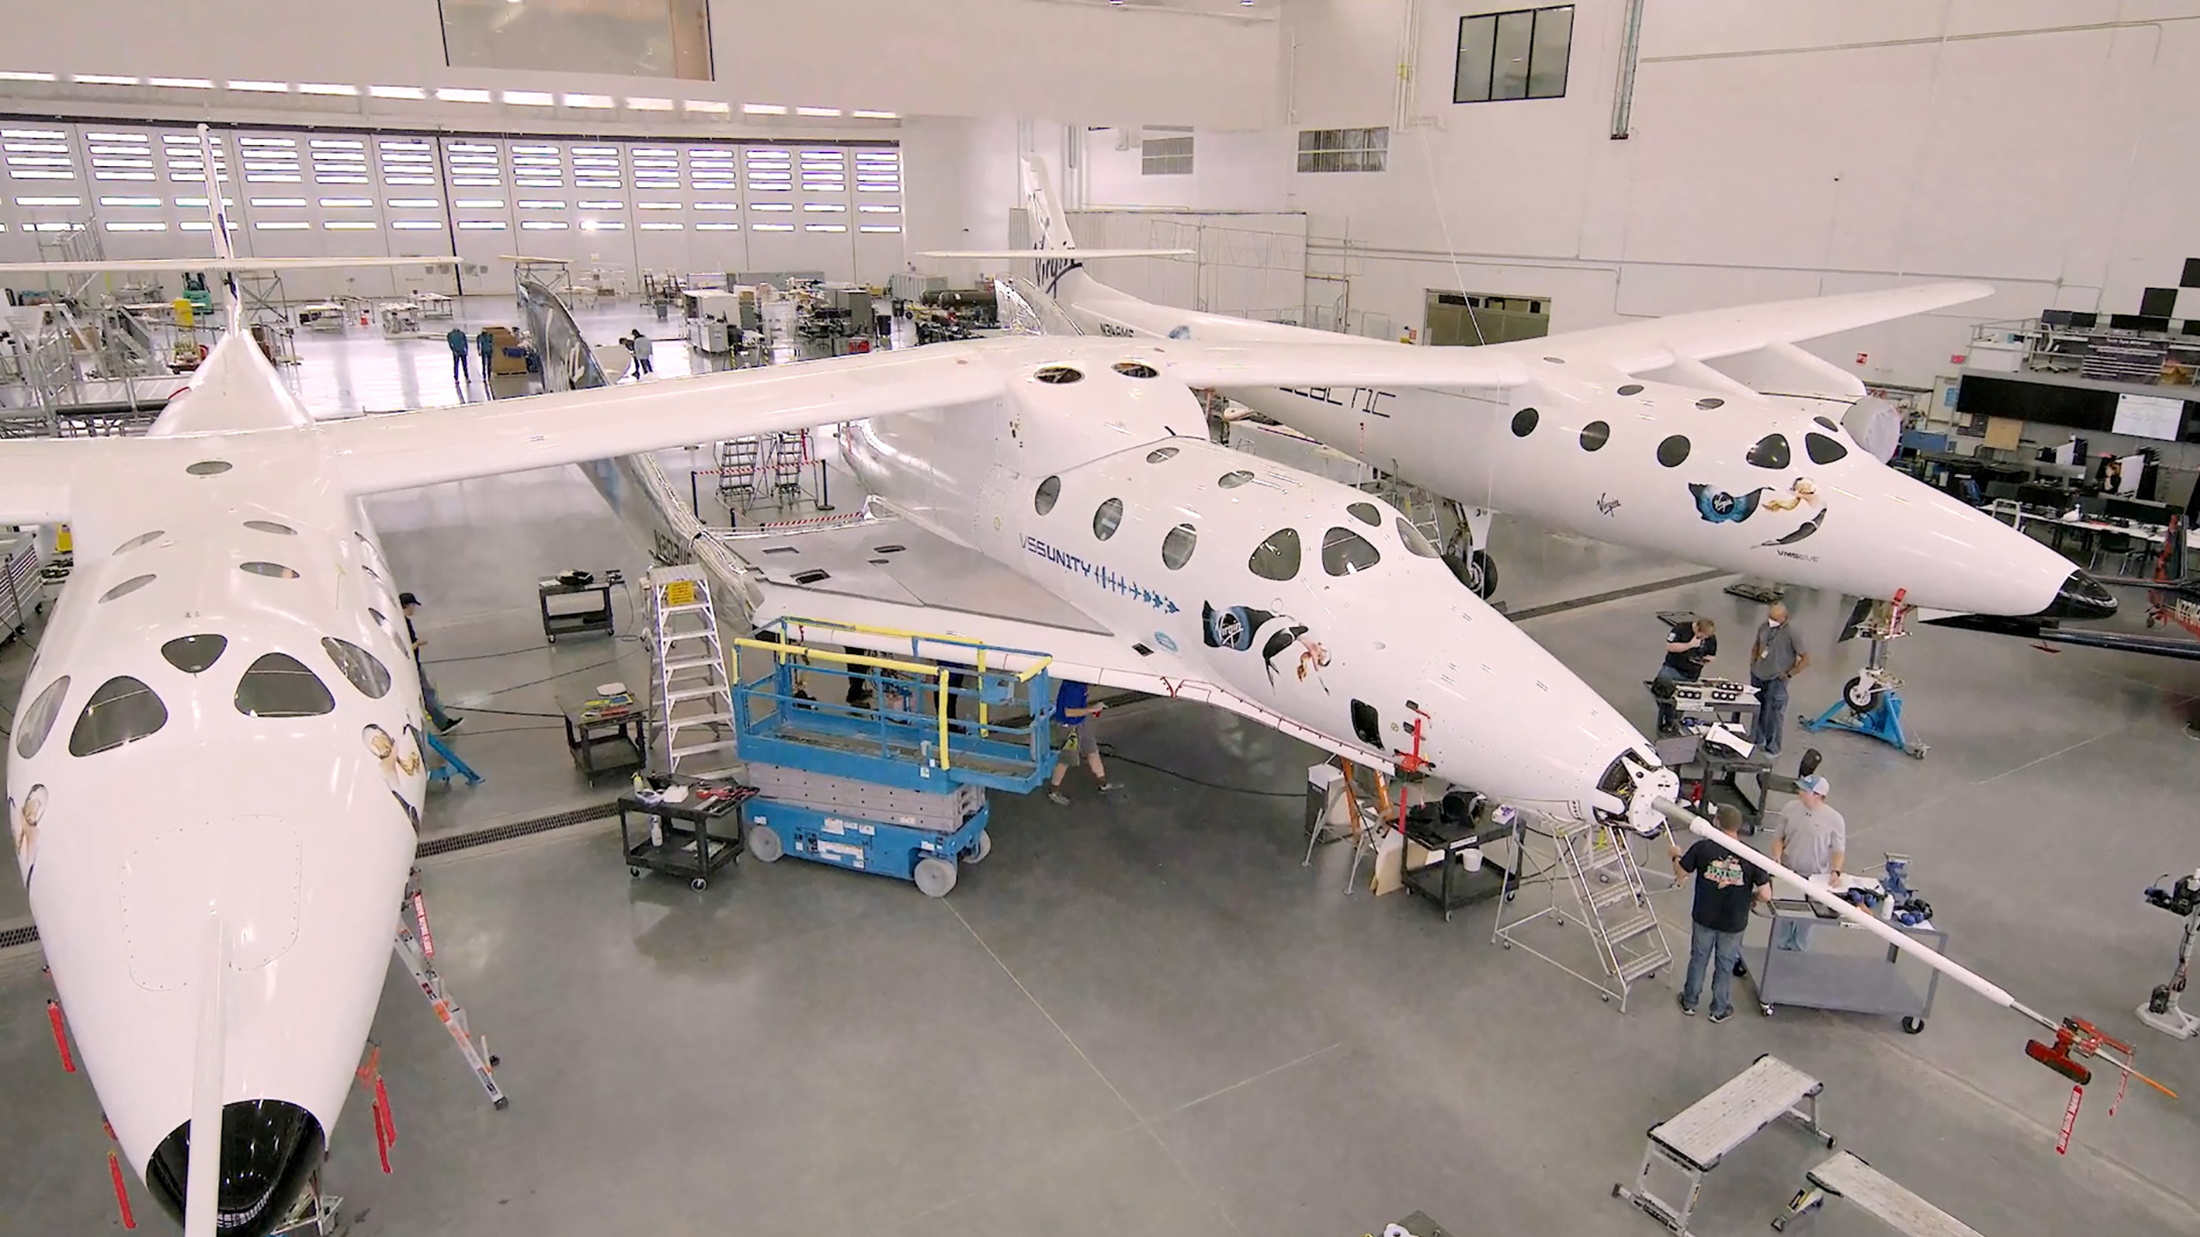 Virgin Galactic's passenger rocket plane, the VSS Unity, is seen in its hangar